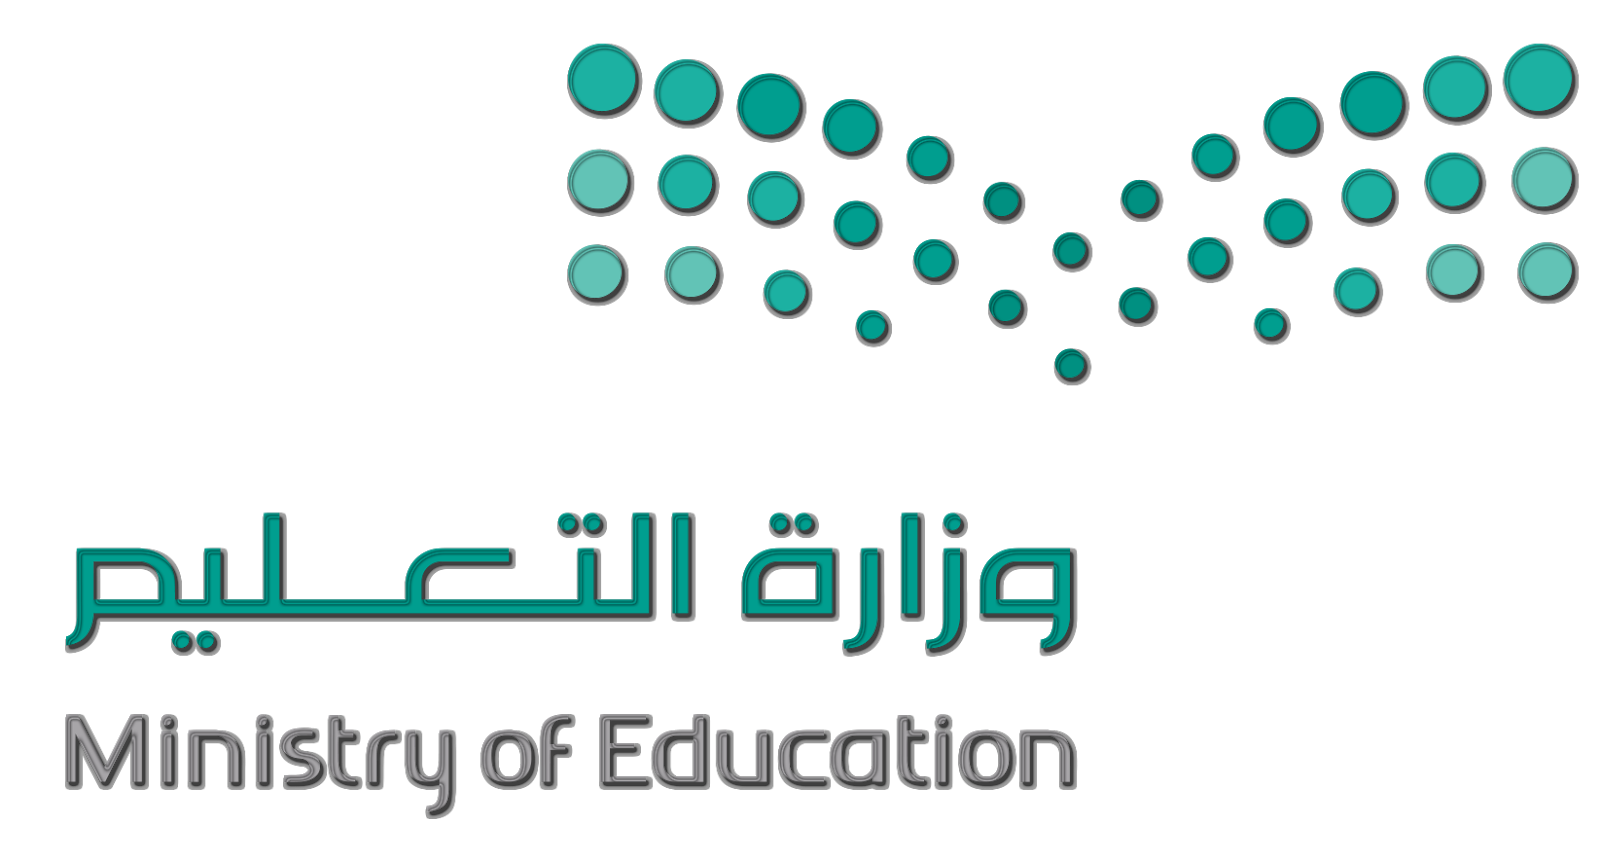 صورة شعار التربية والتعليم اعتماد رمز وزارة المعارف في السعودية صور حب